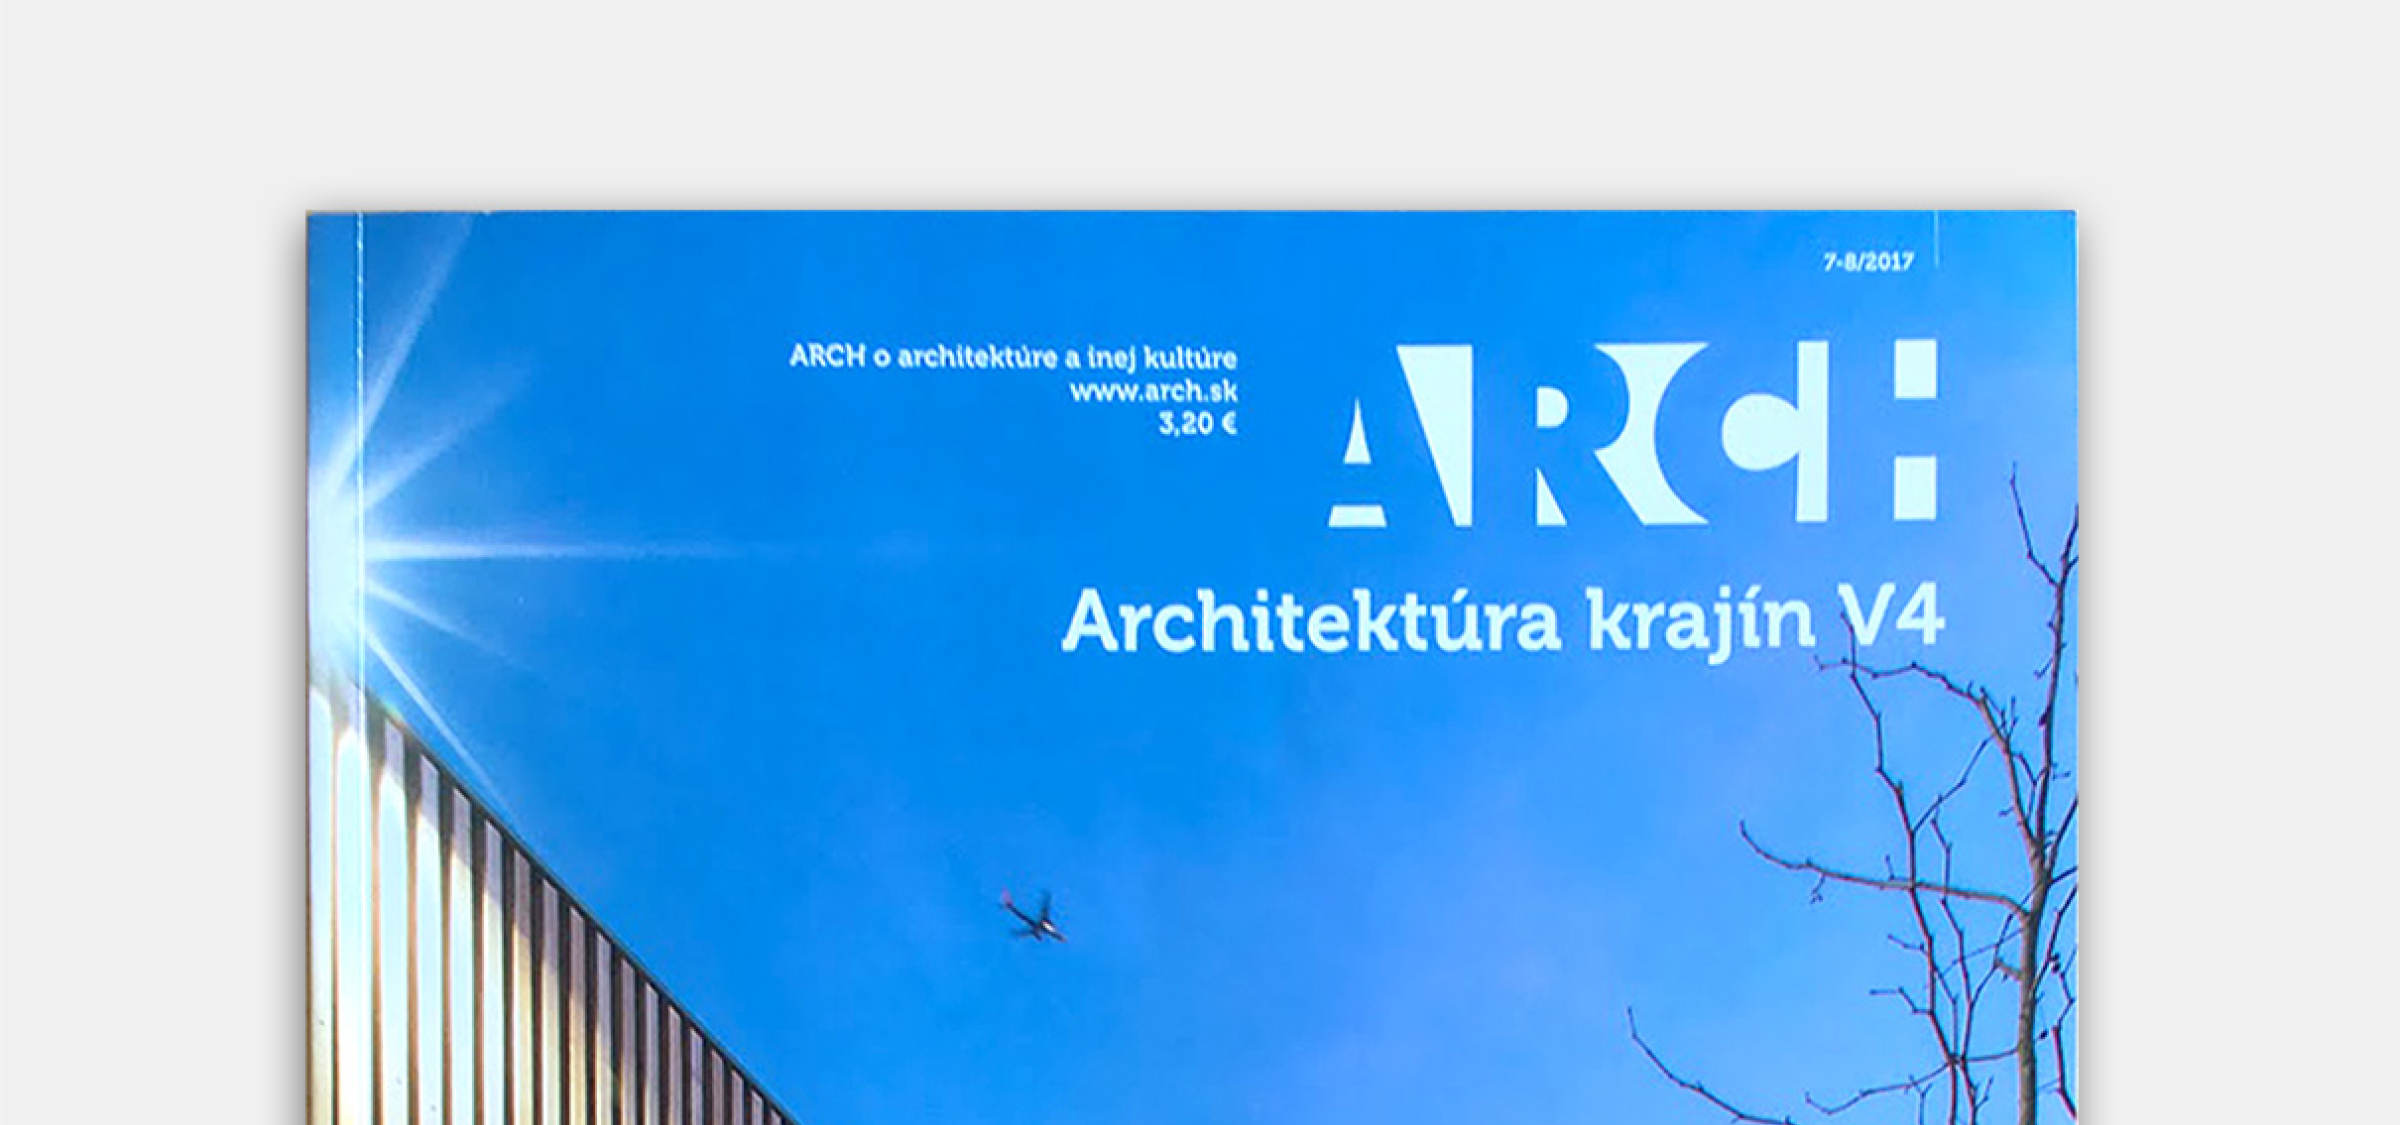 Mlyn Humenné v novom ARCHu | Aktuálne | Atrium Architekti